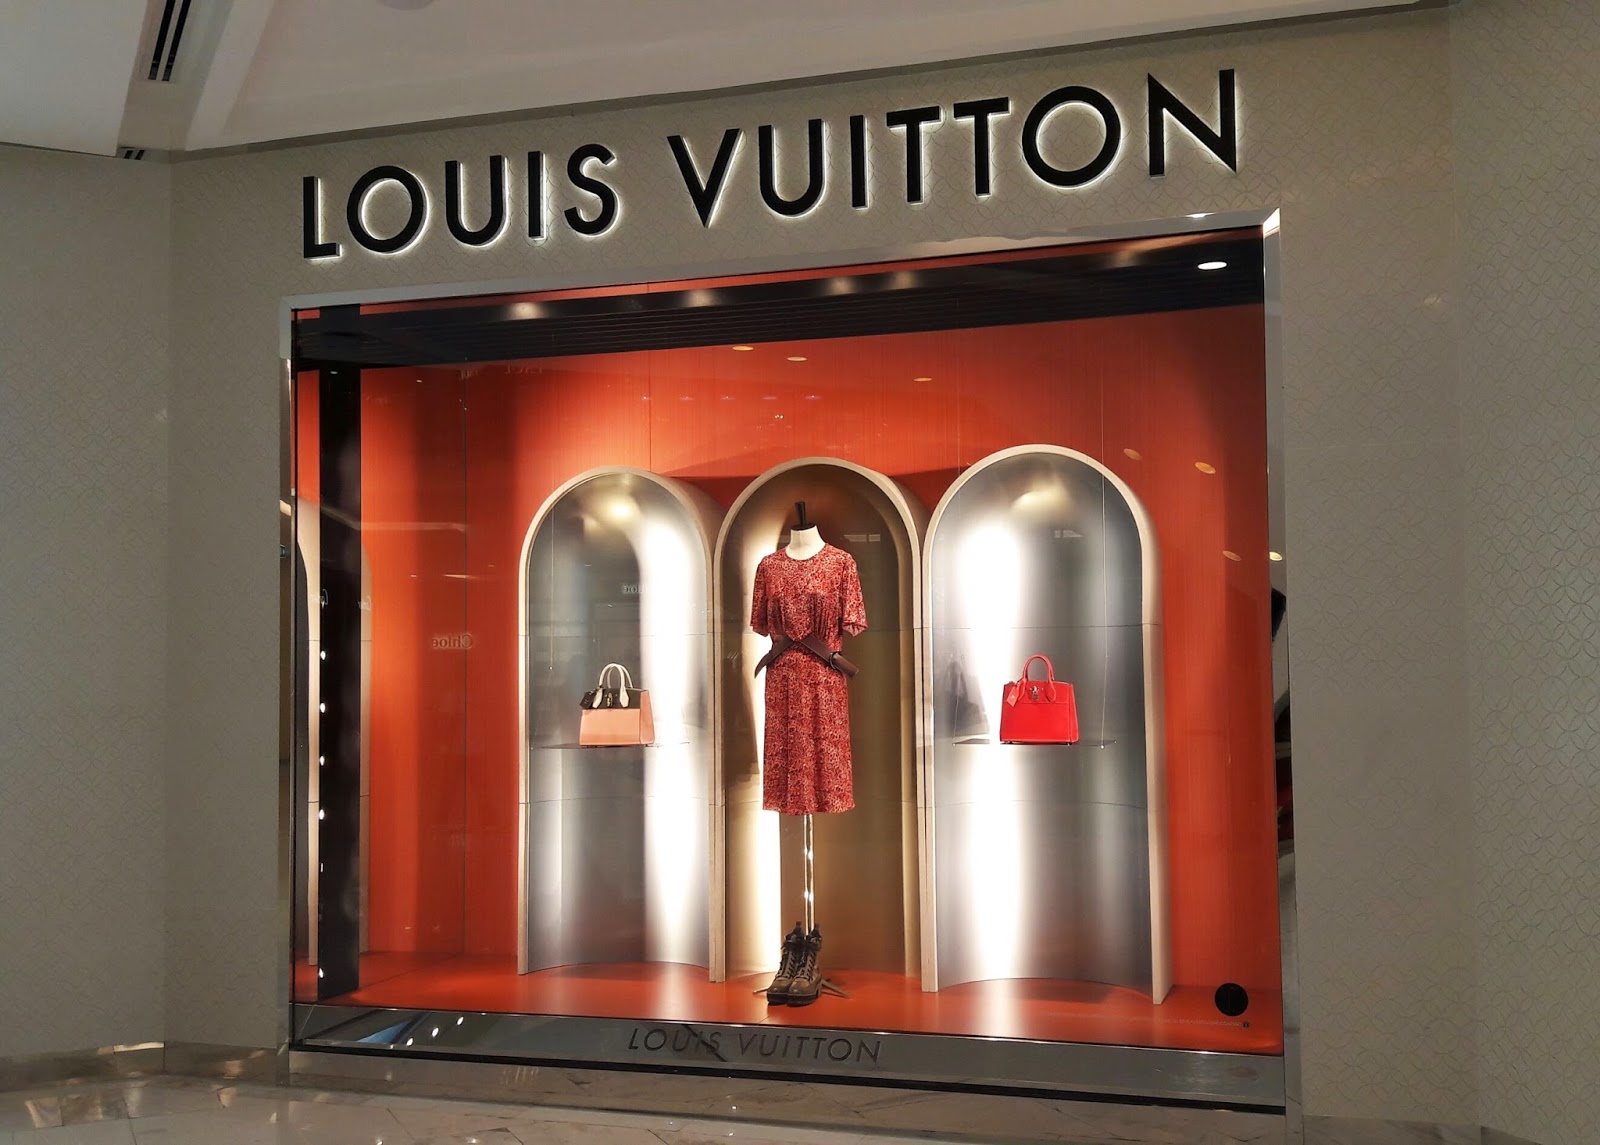 Louis Vuitton windows, Bangkok